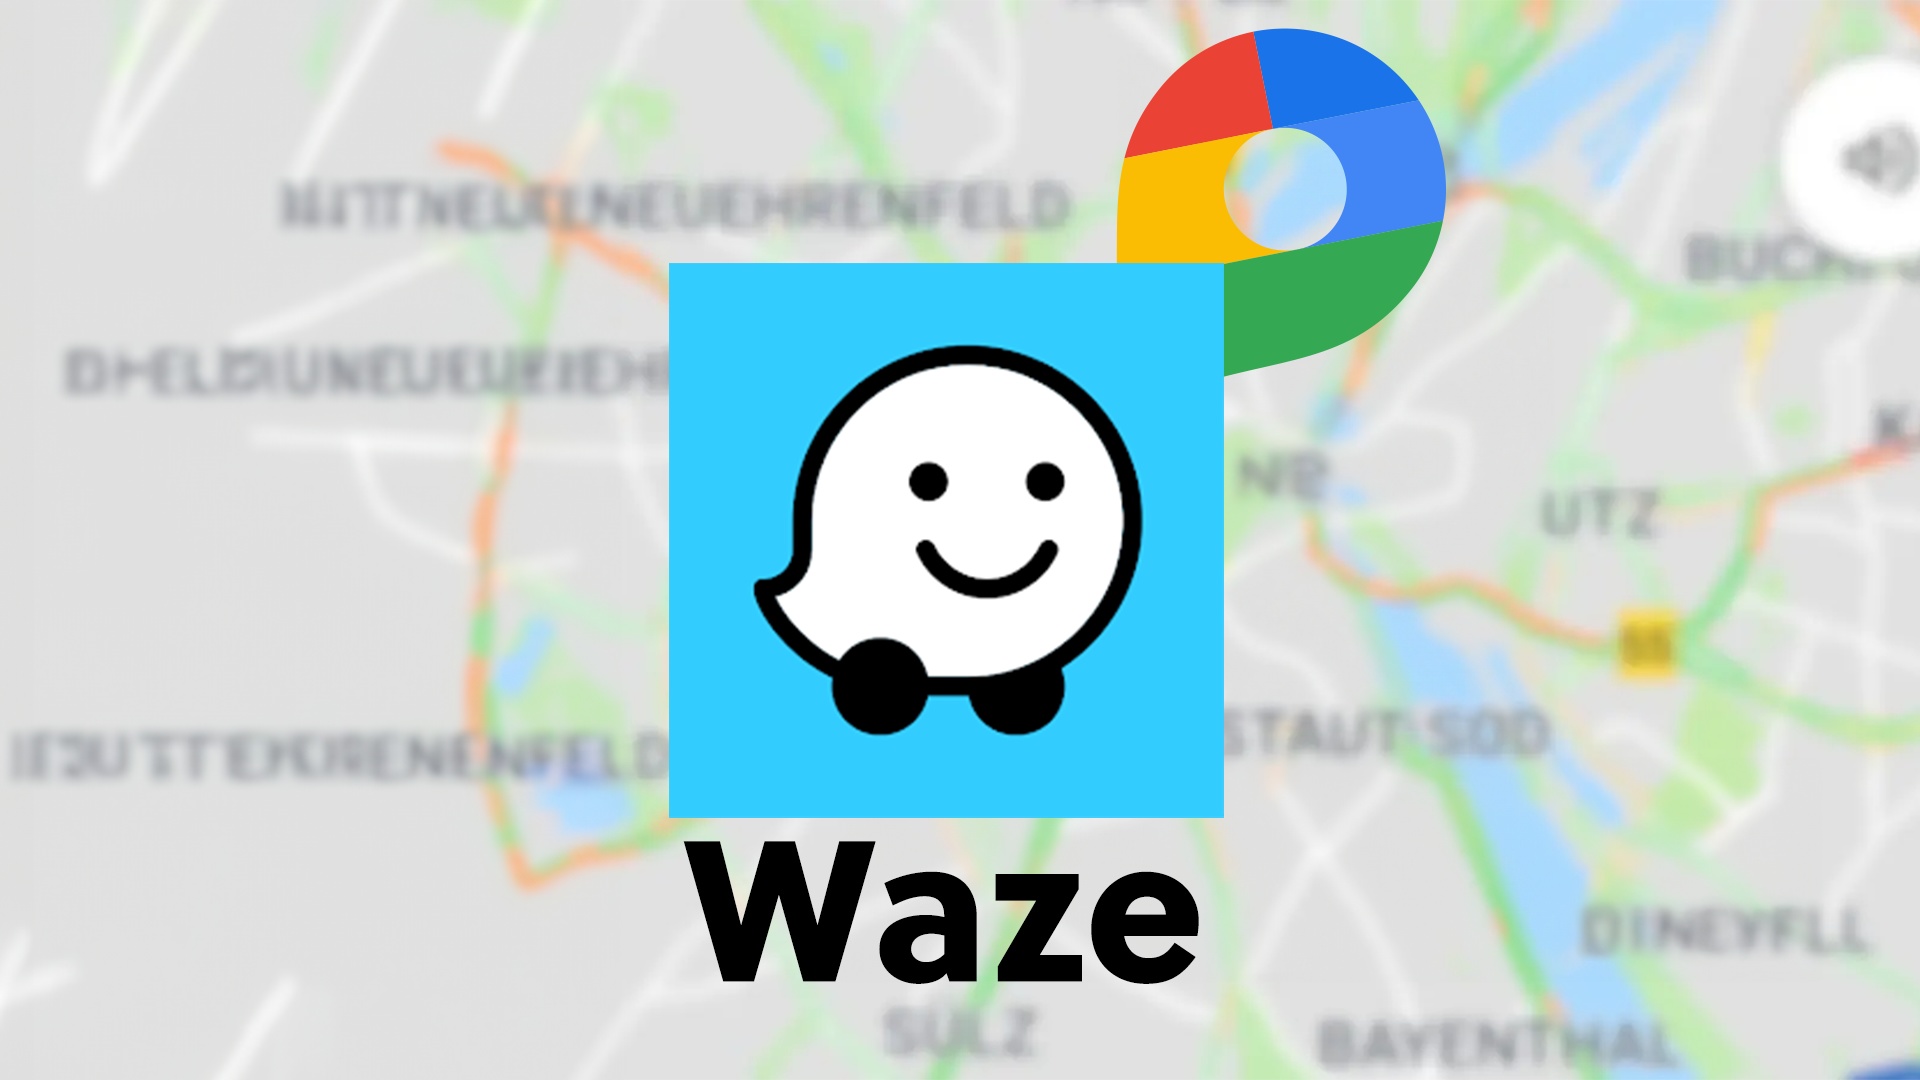 #»Sammlung lästiger Bugs« – Es war der Star unter den GPS-Apps, doch damit ist es jetzt vorbei. Was ist los bei Waze?